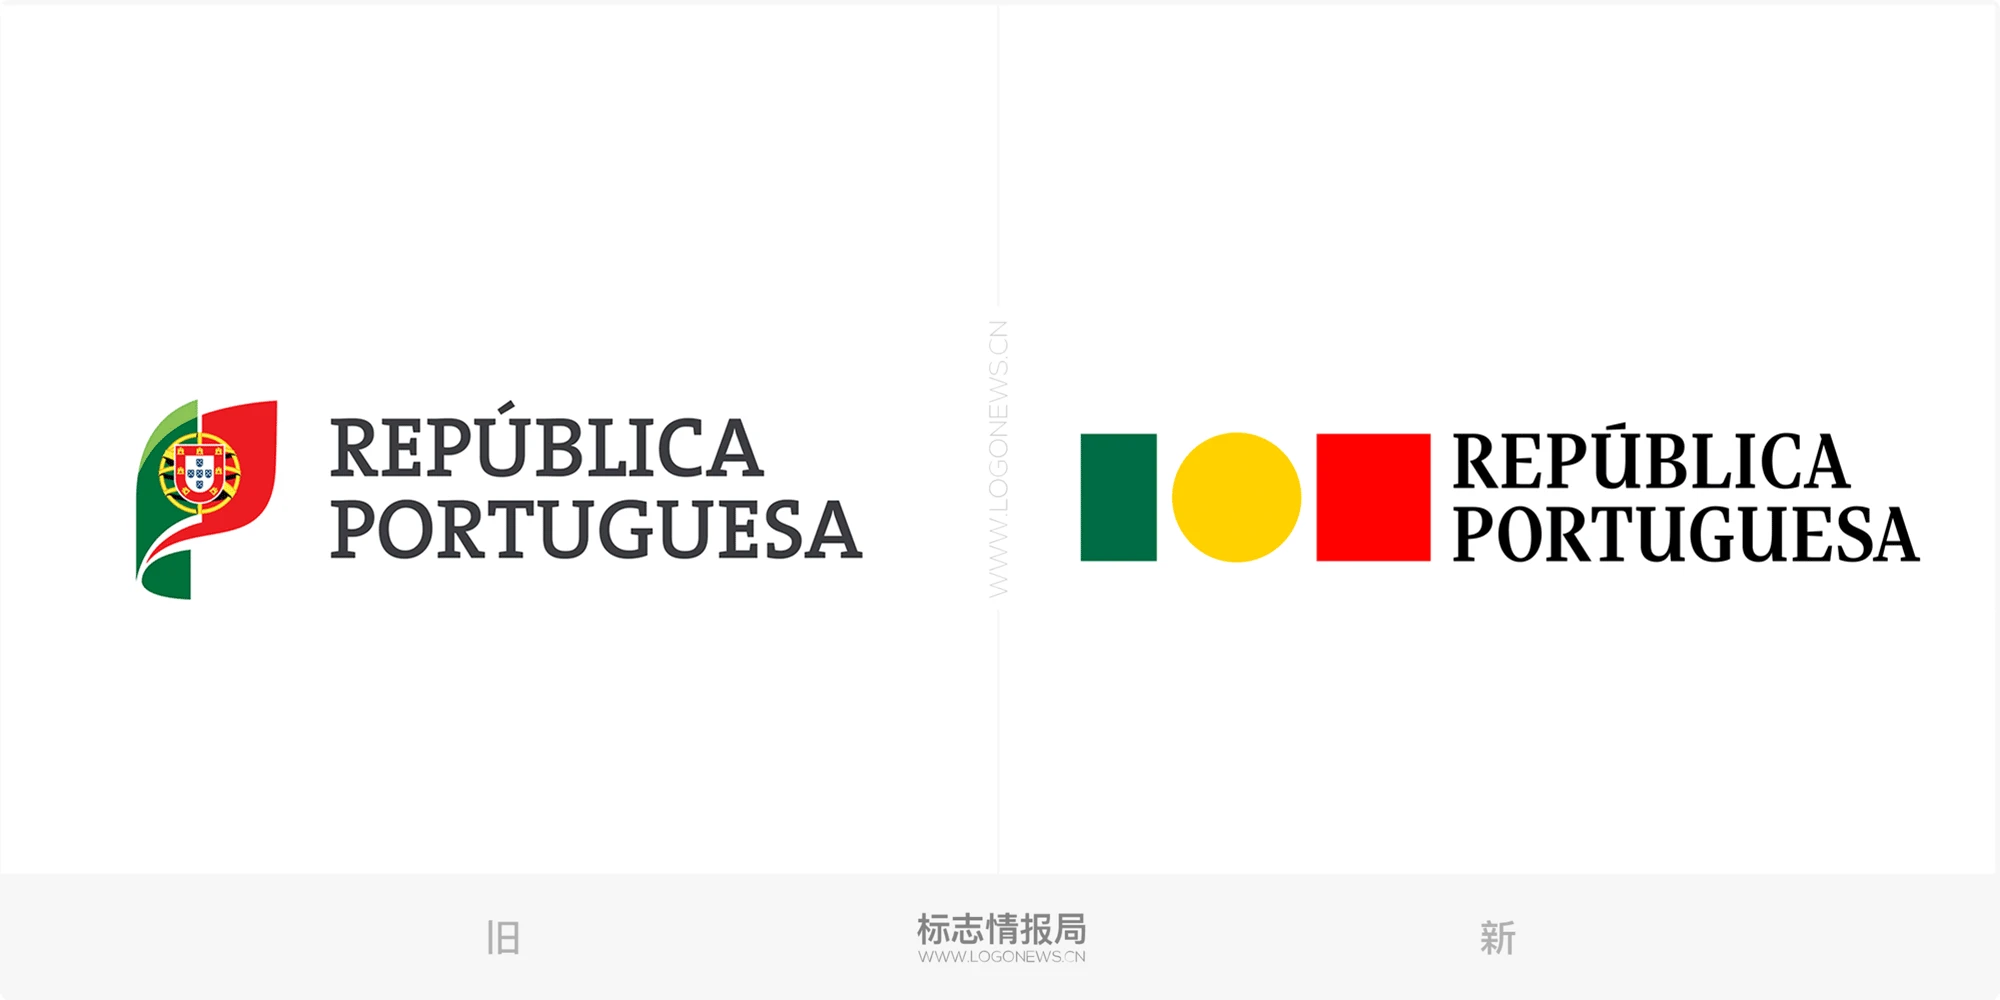 葡萄牙政府設計了一個極簡的新標誌 標誌情報局